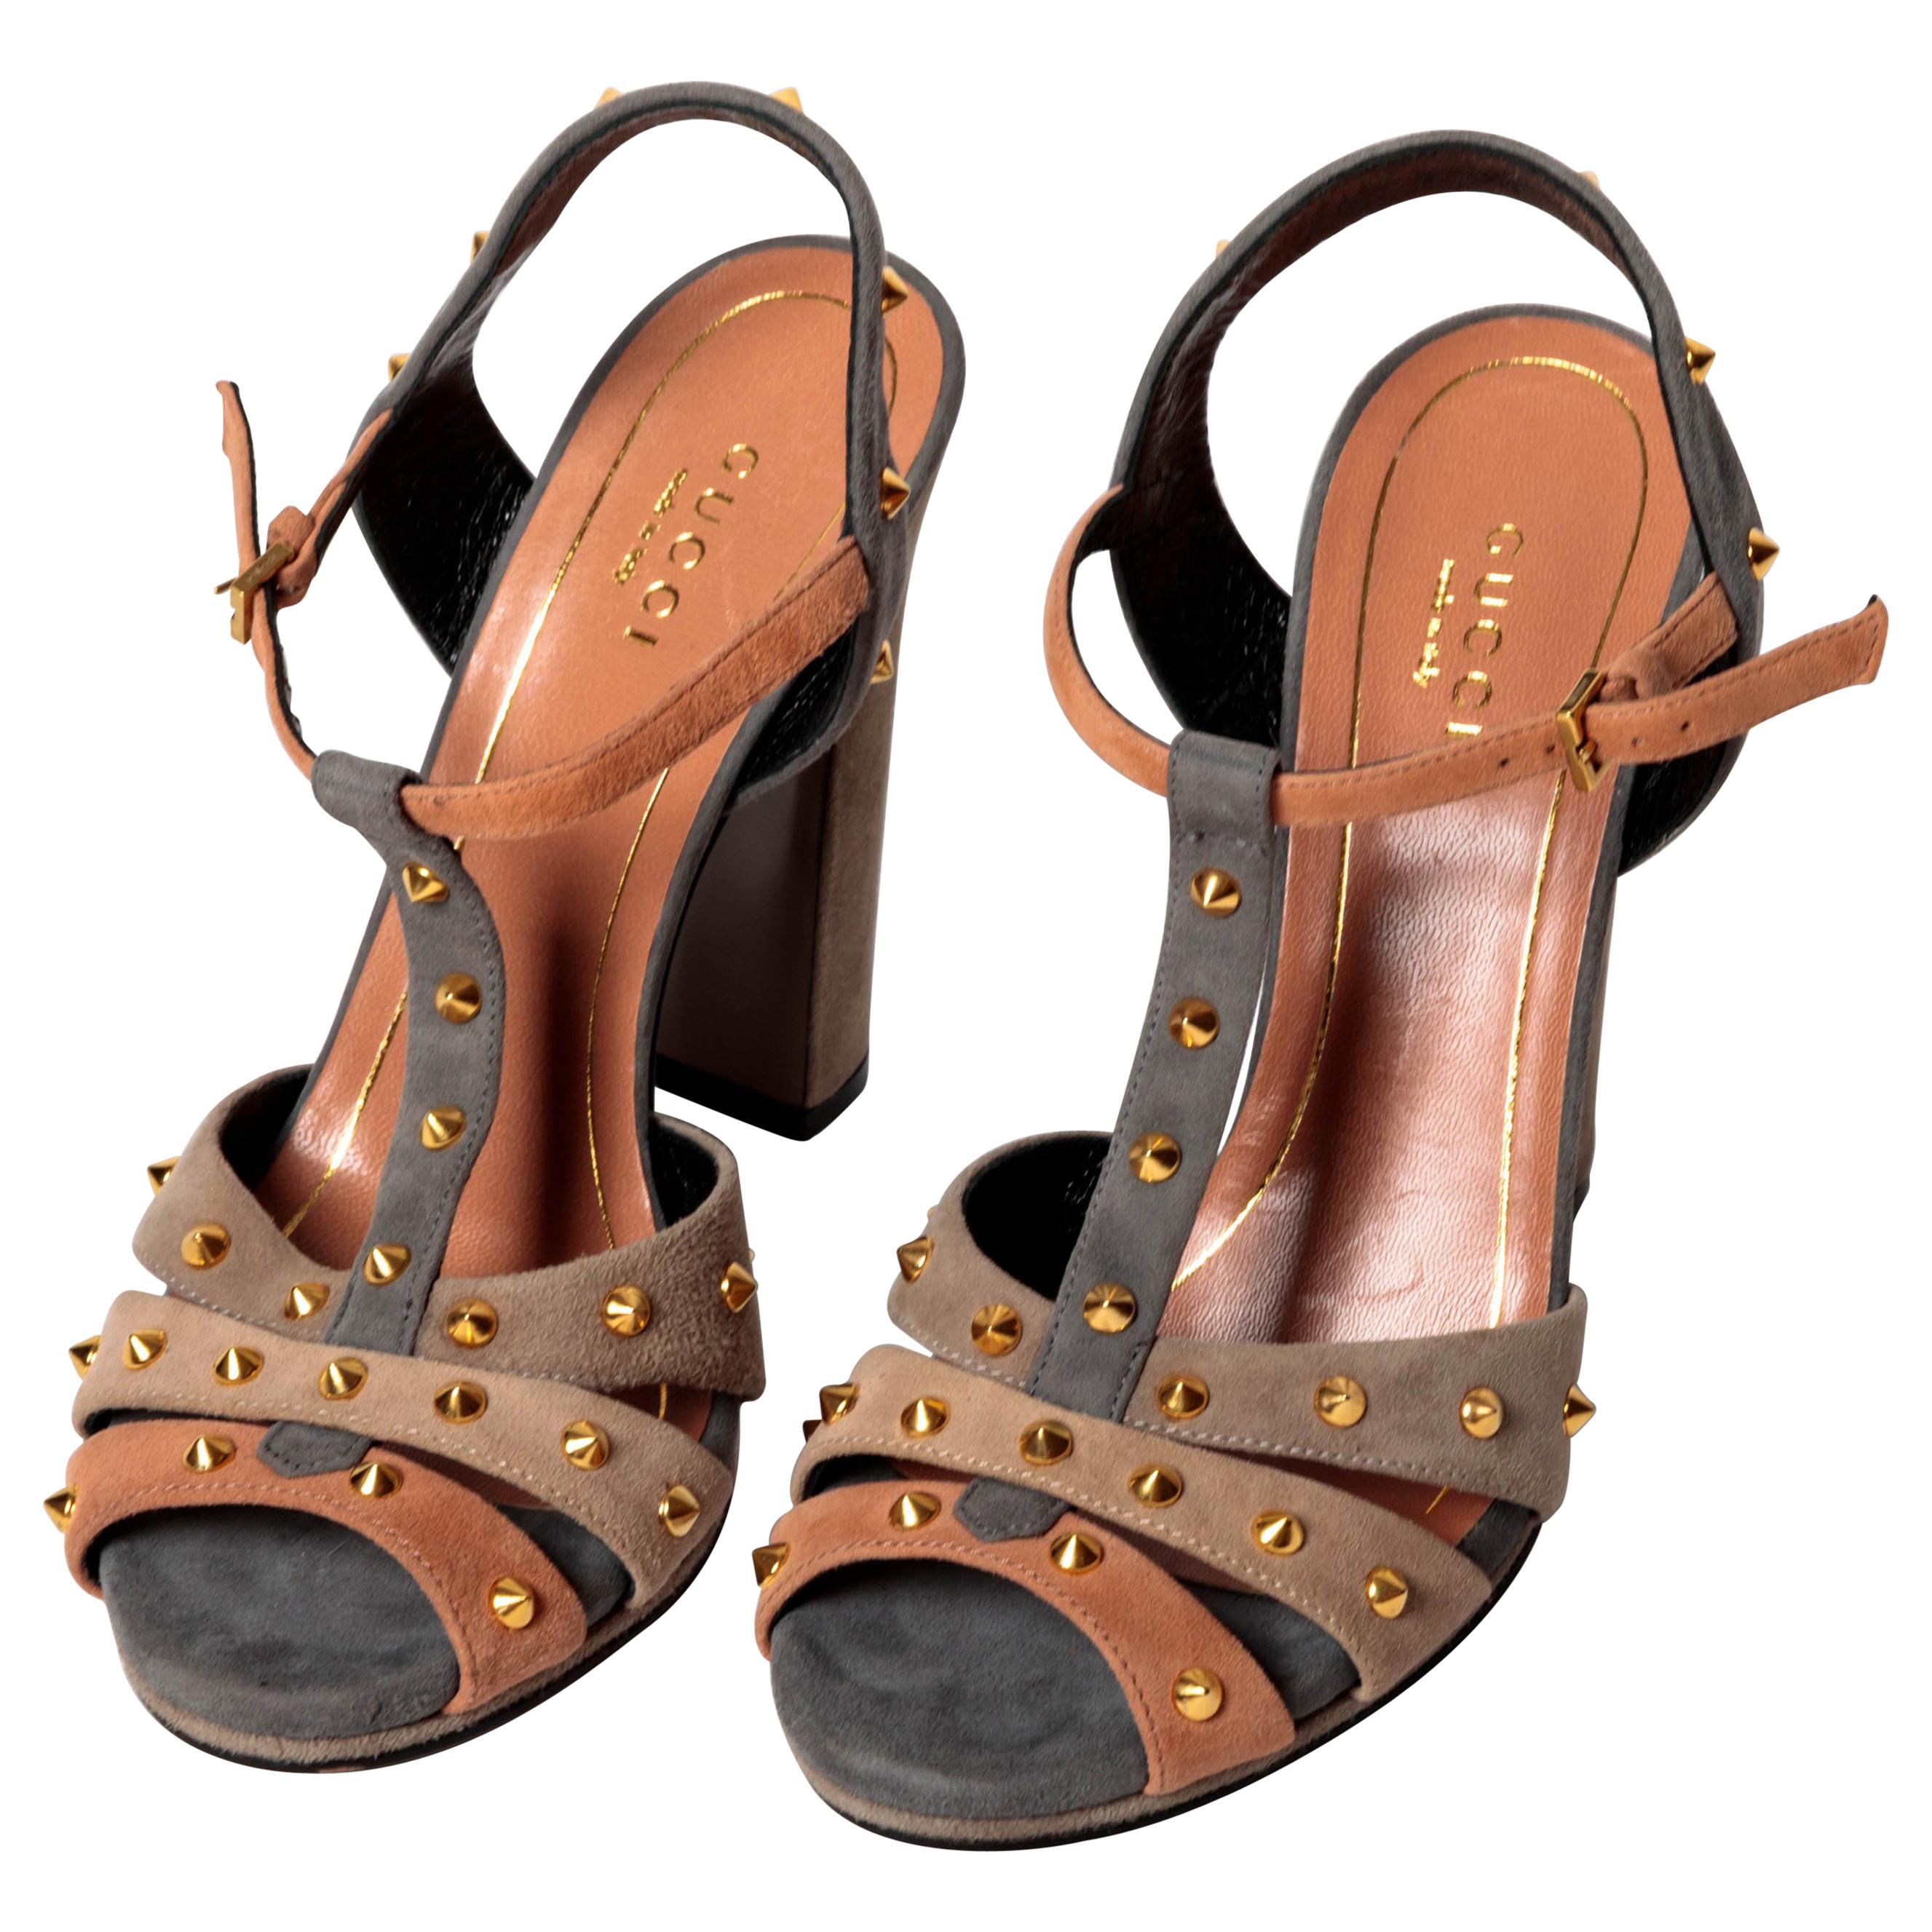 Gucci Jacquelyne Sandals - Size 36.5 / US 6.5